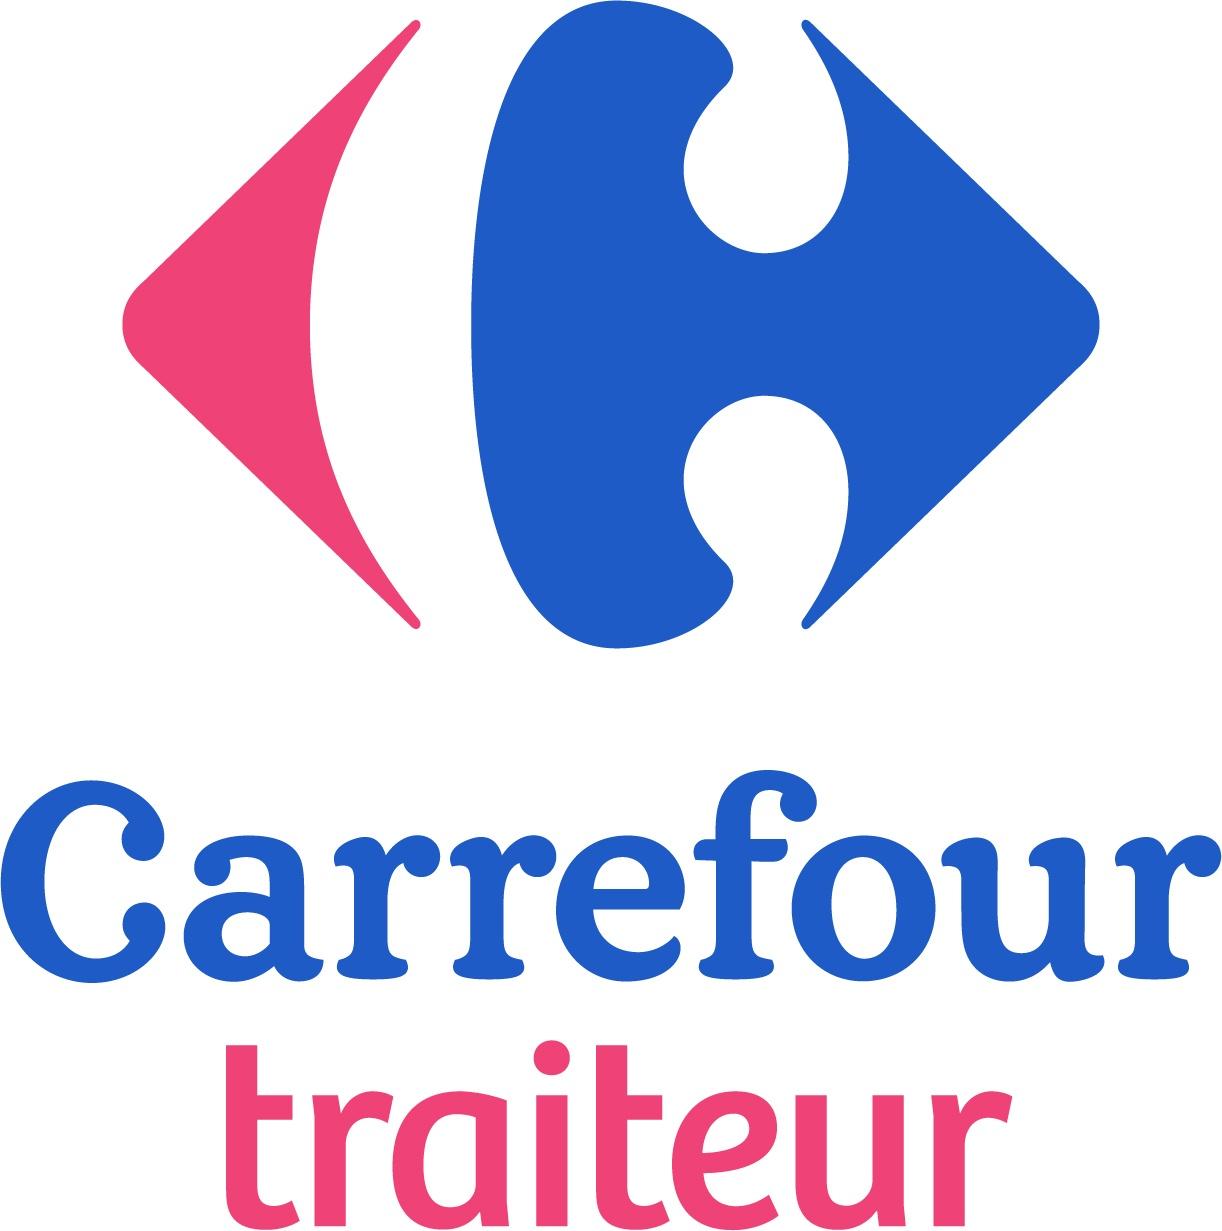 Carrefour Traiteur Bagnols Sur Cèze